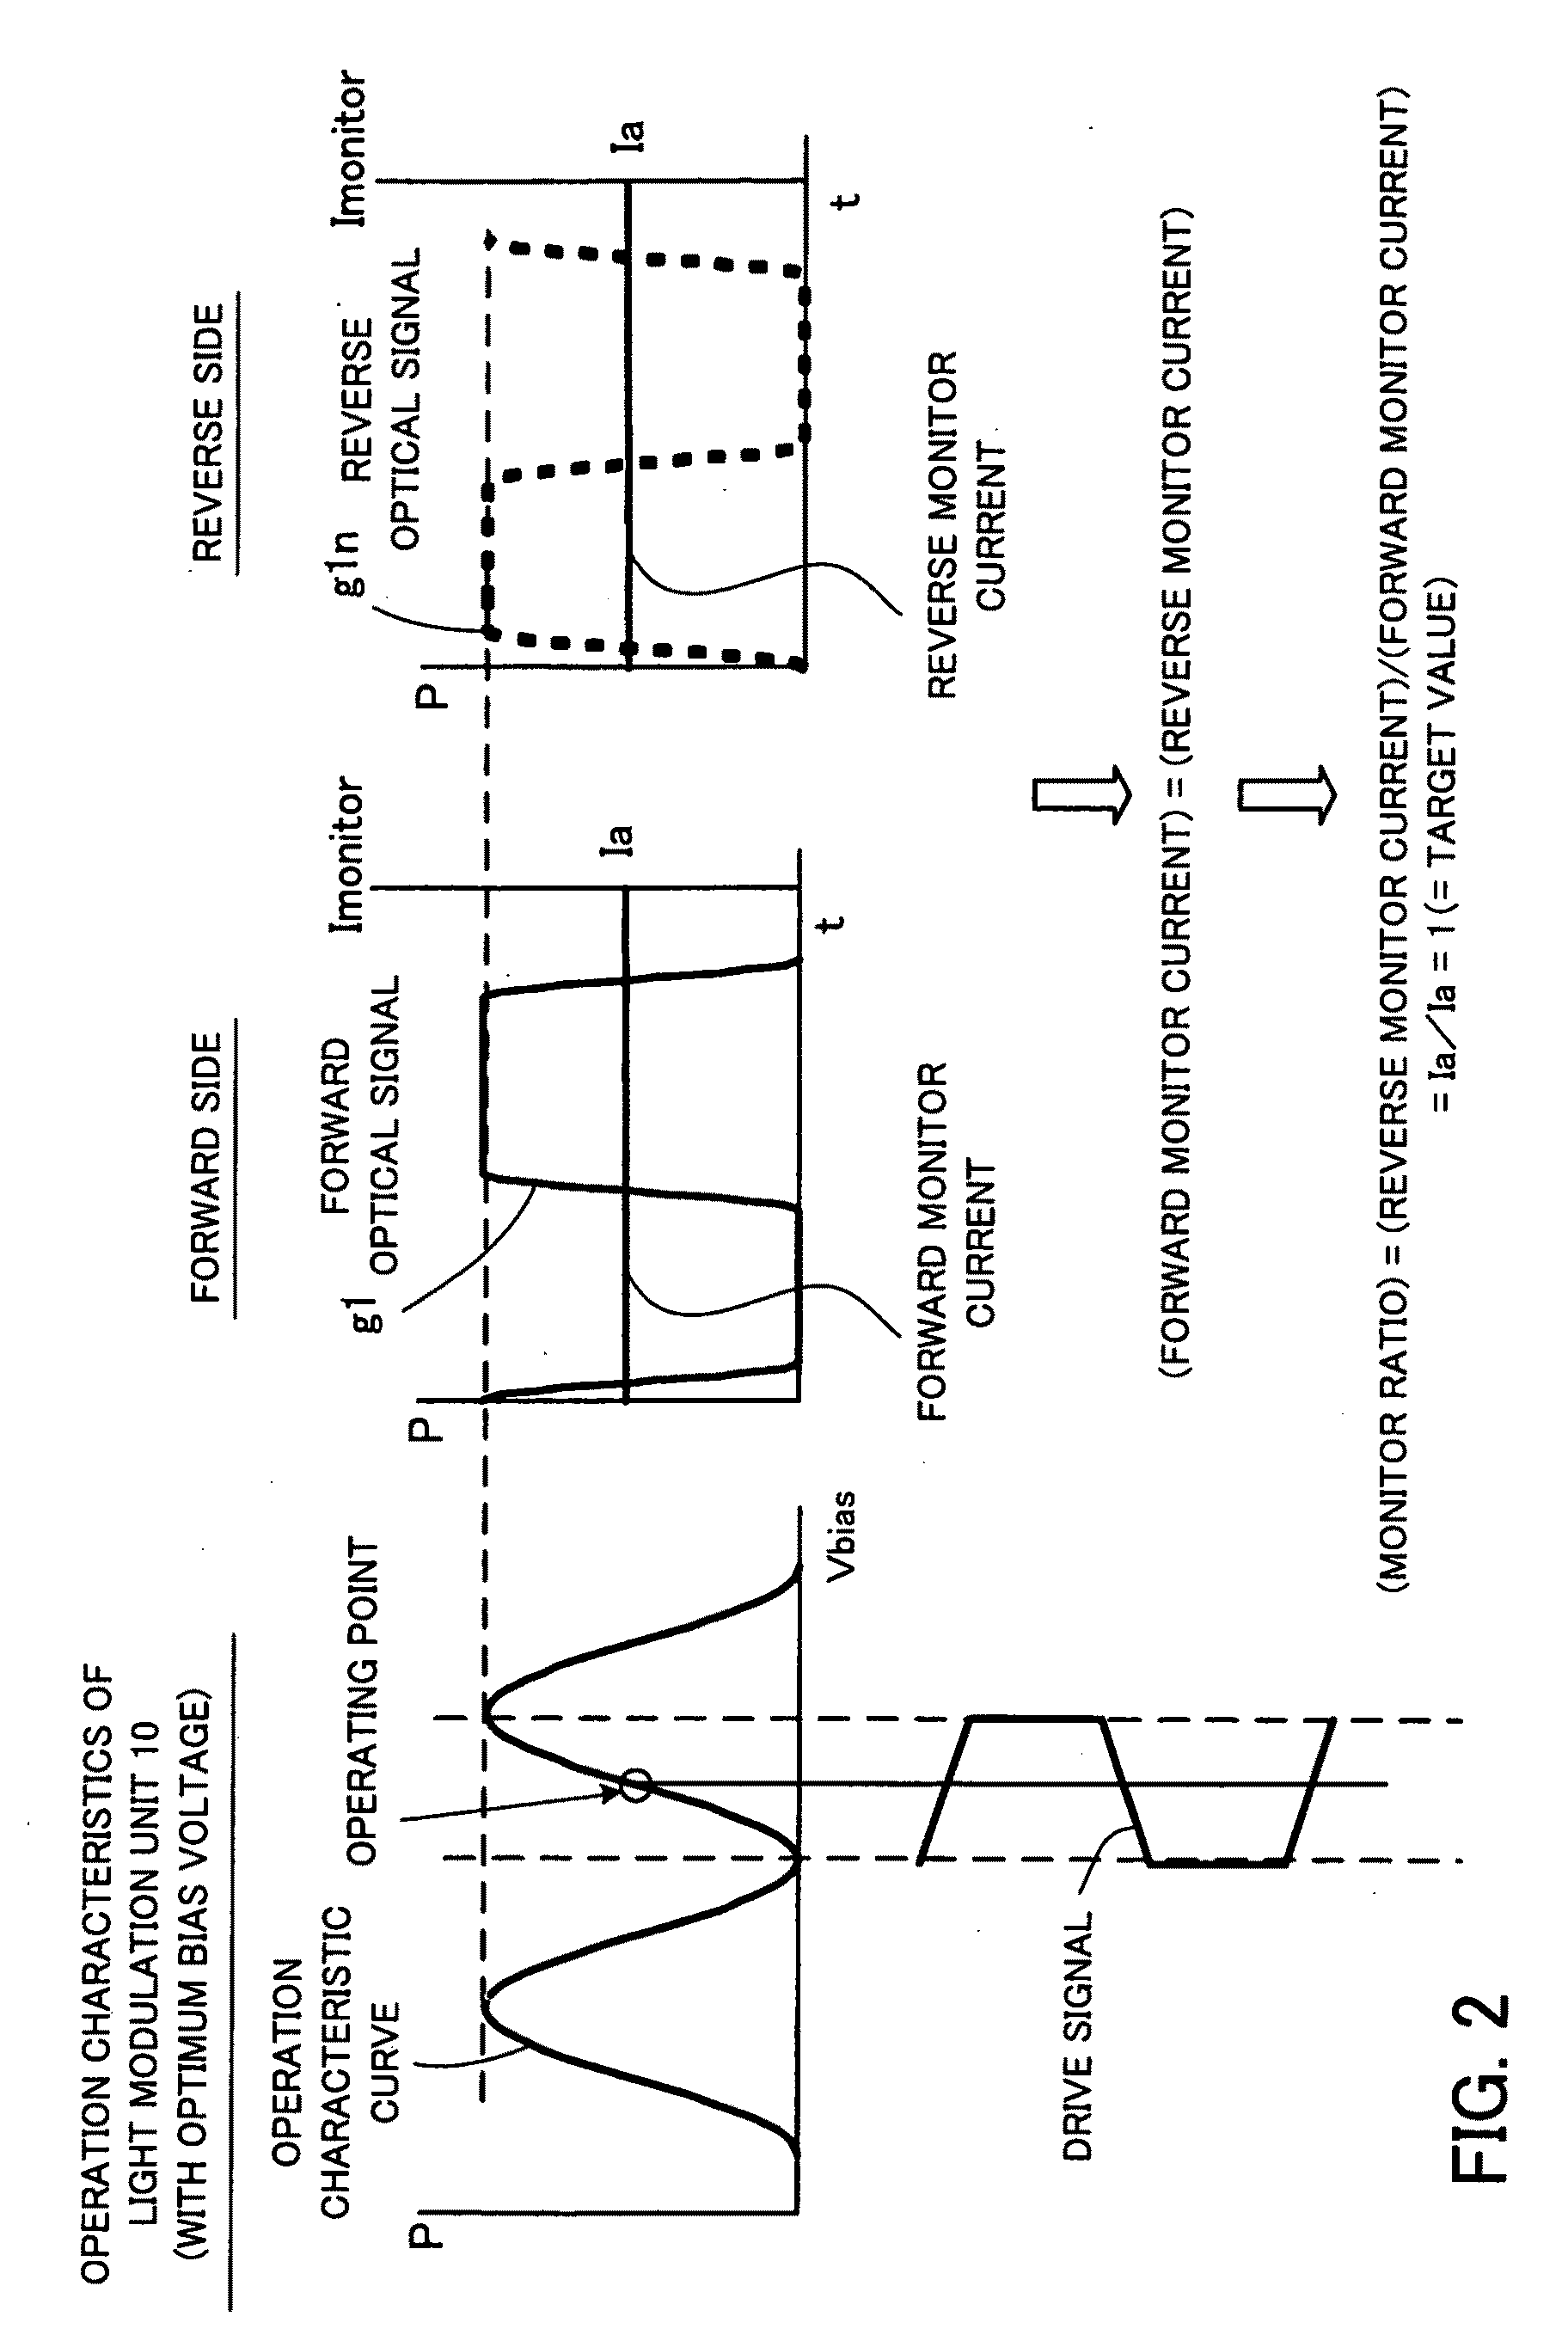 Optical modulation apparatus